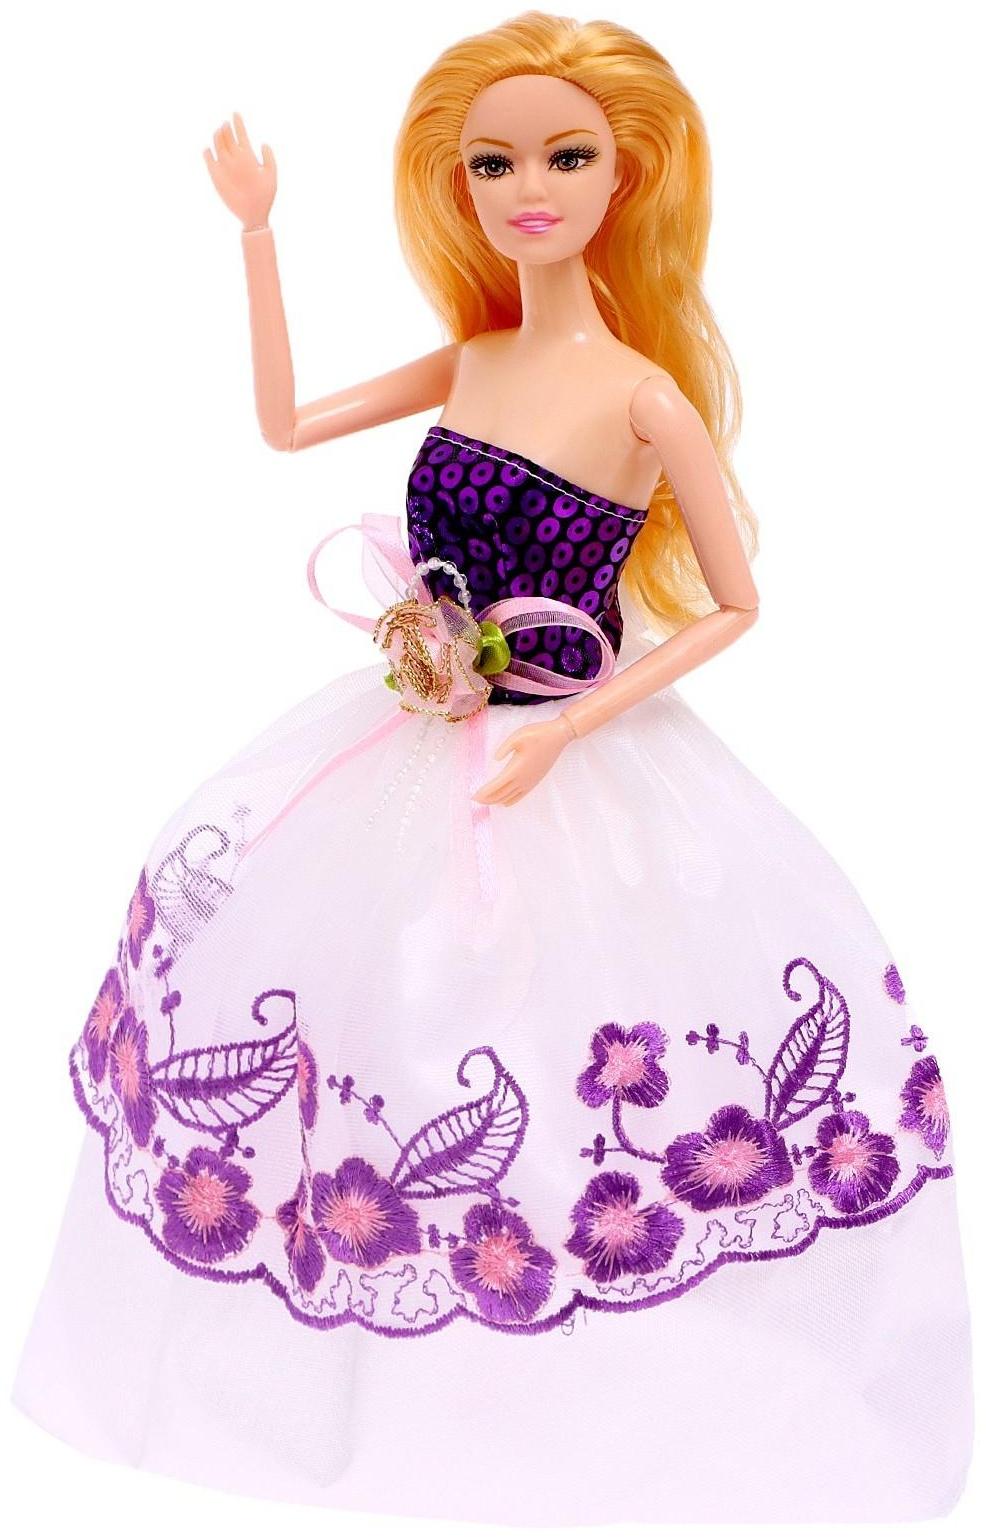 Кукла-модель шарнирная «Лиза» в платье, МИКС